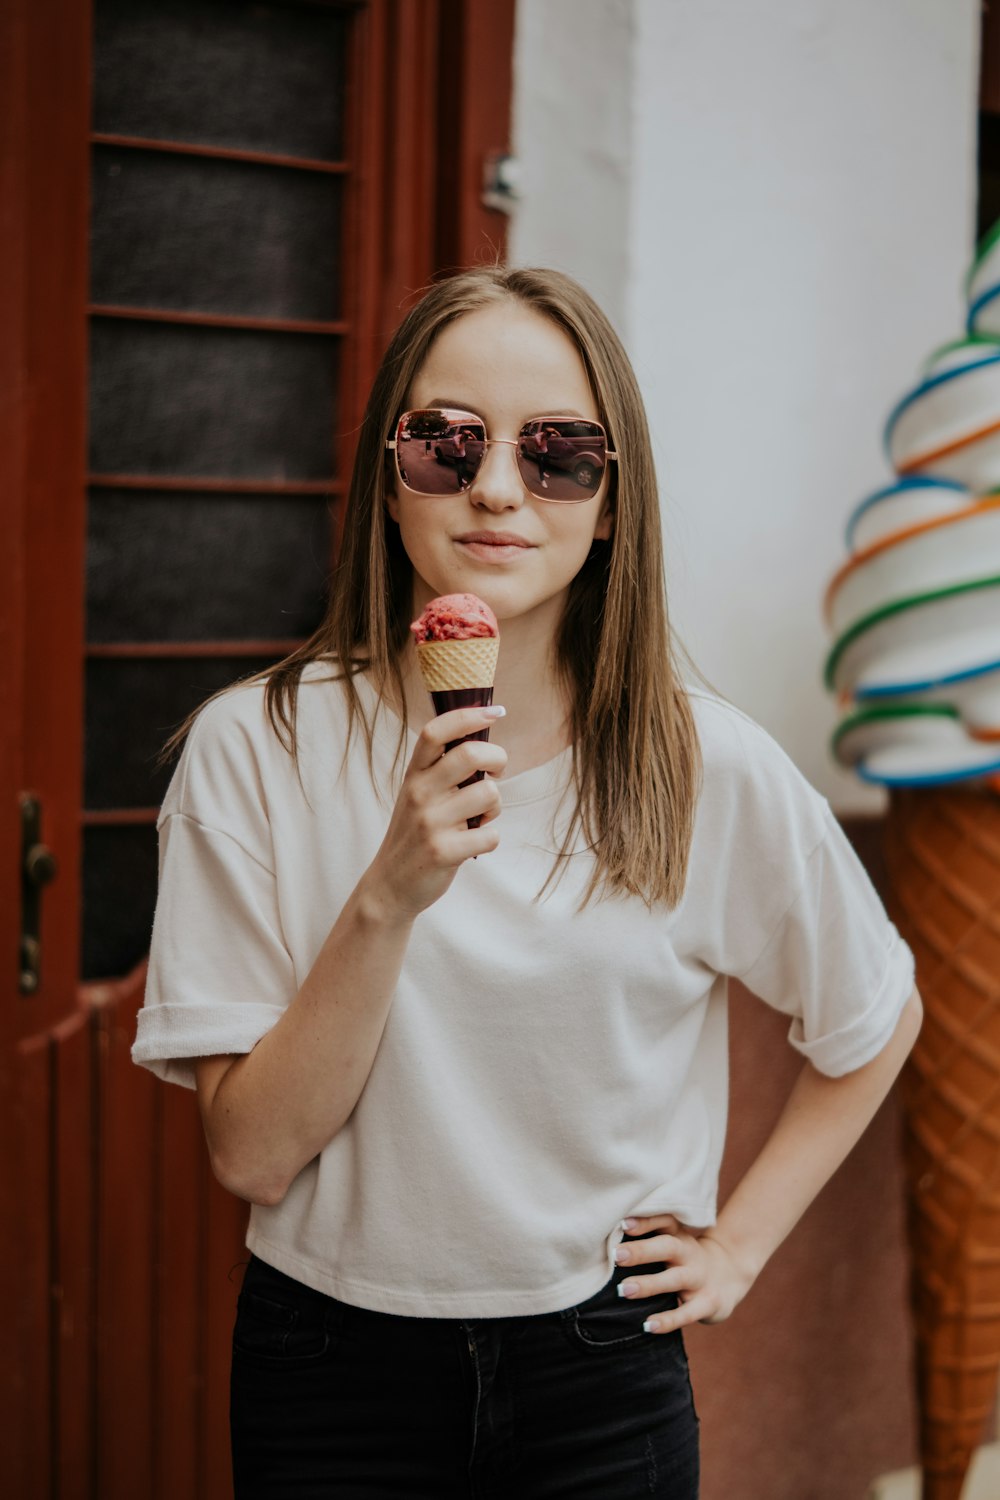 Foto mujer en camiseta blanca con cuello redondo sosteniendo cono de helado  – Imagen Humano gratis en Unsplash